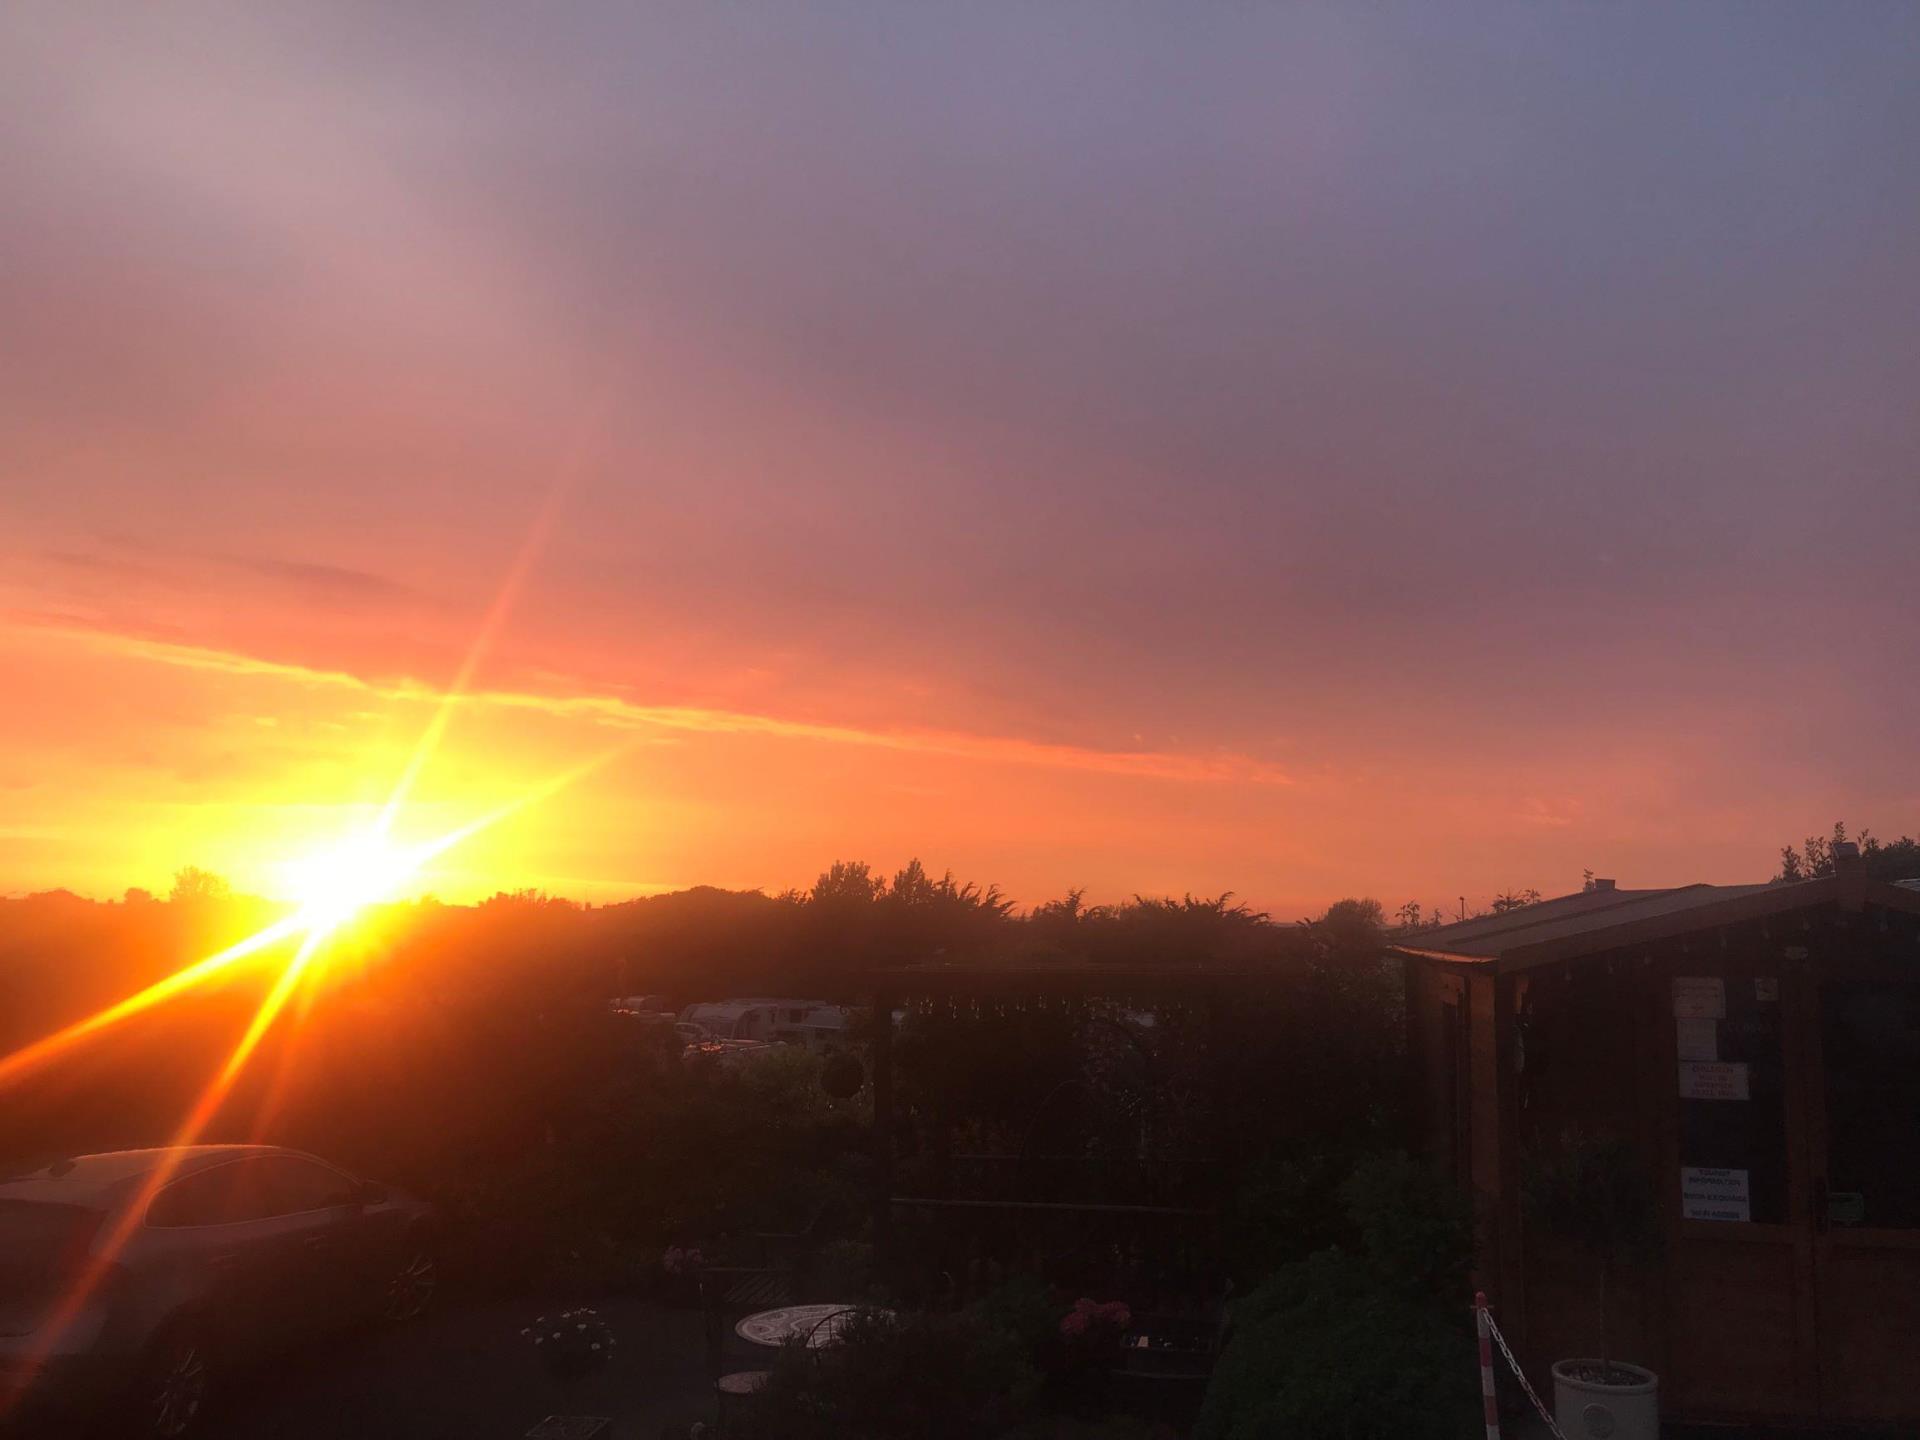 Sunset over Nant Mill